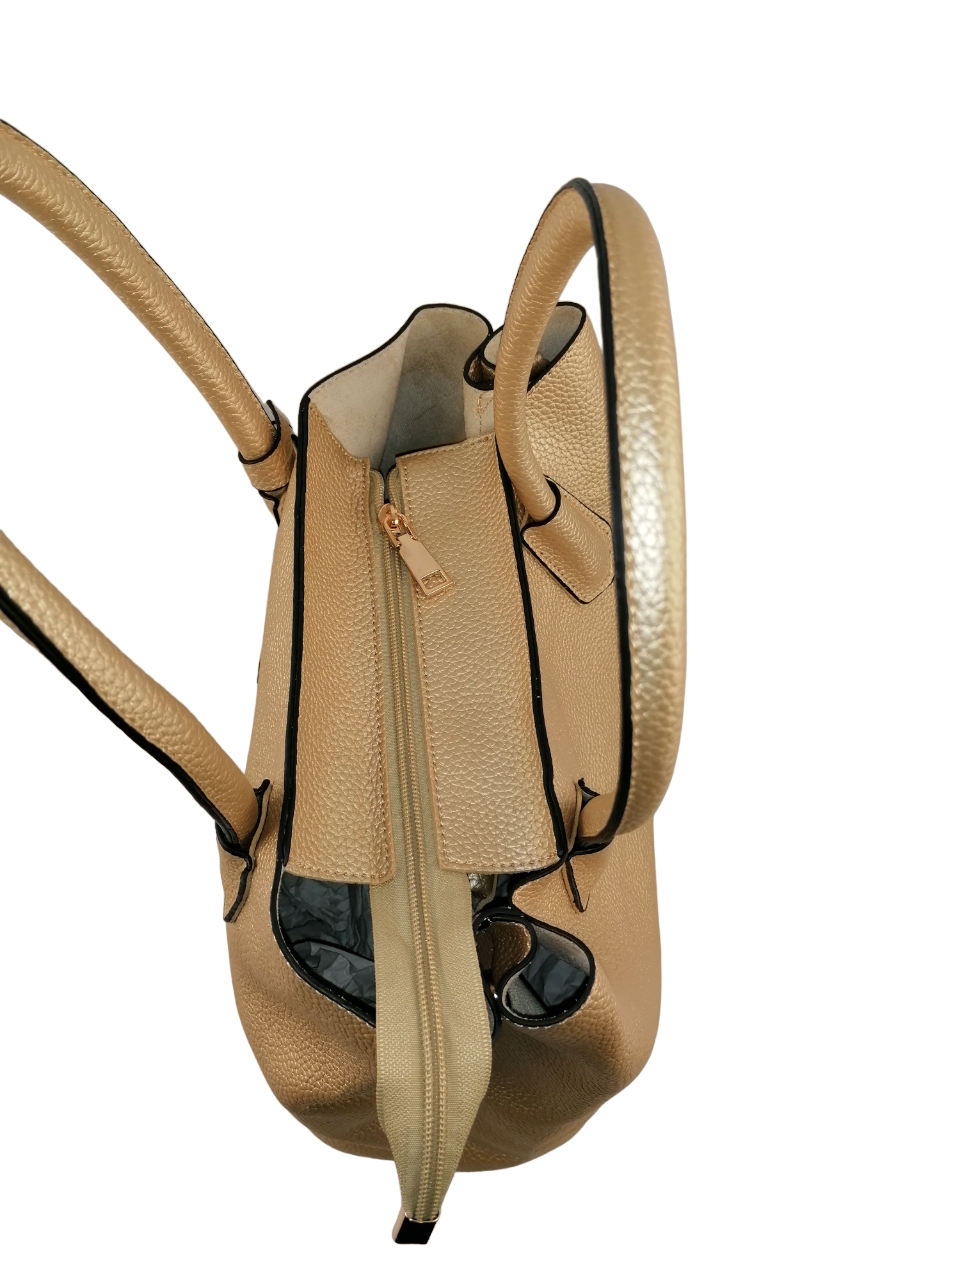 Long & Son Ladies Gold Crossbody Satchel Bag Designer Shoulder Bag